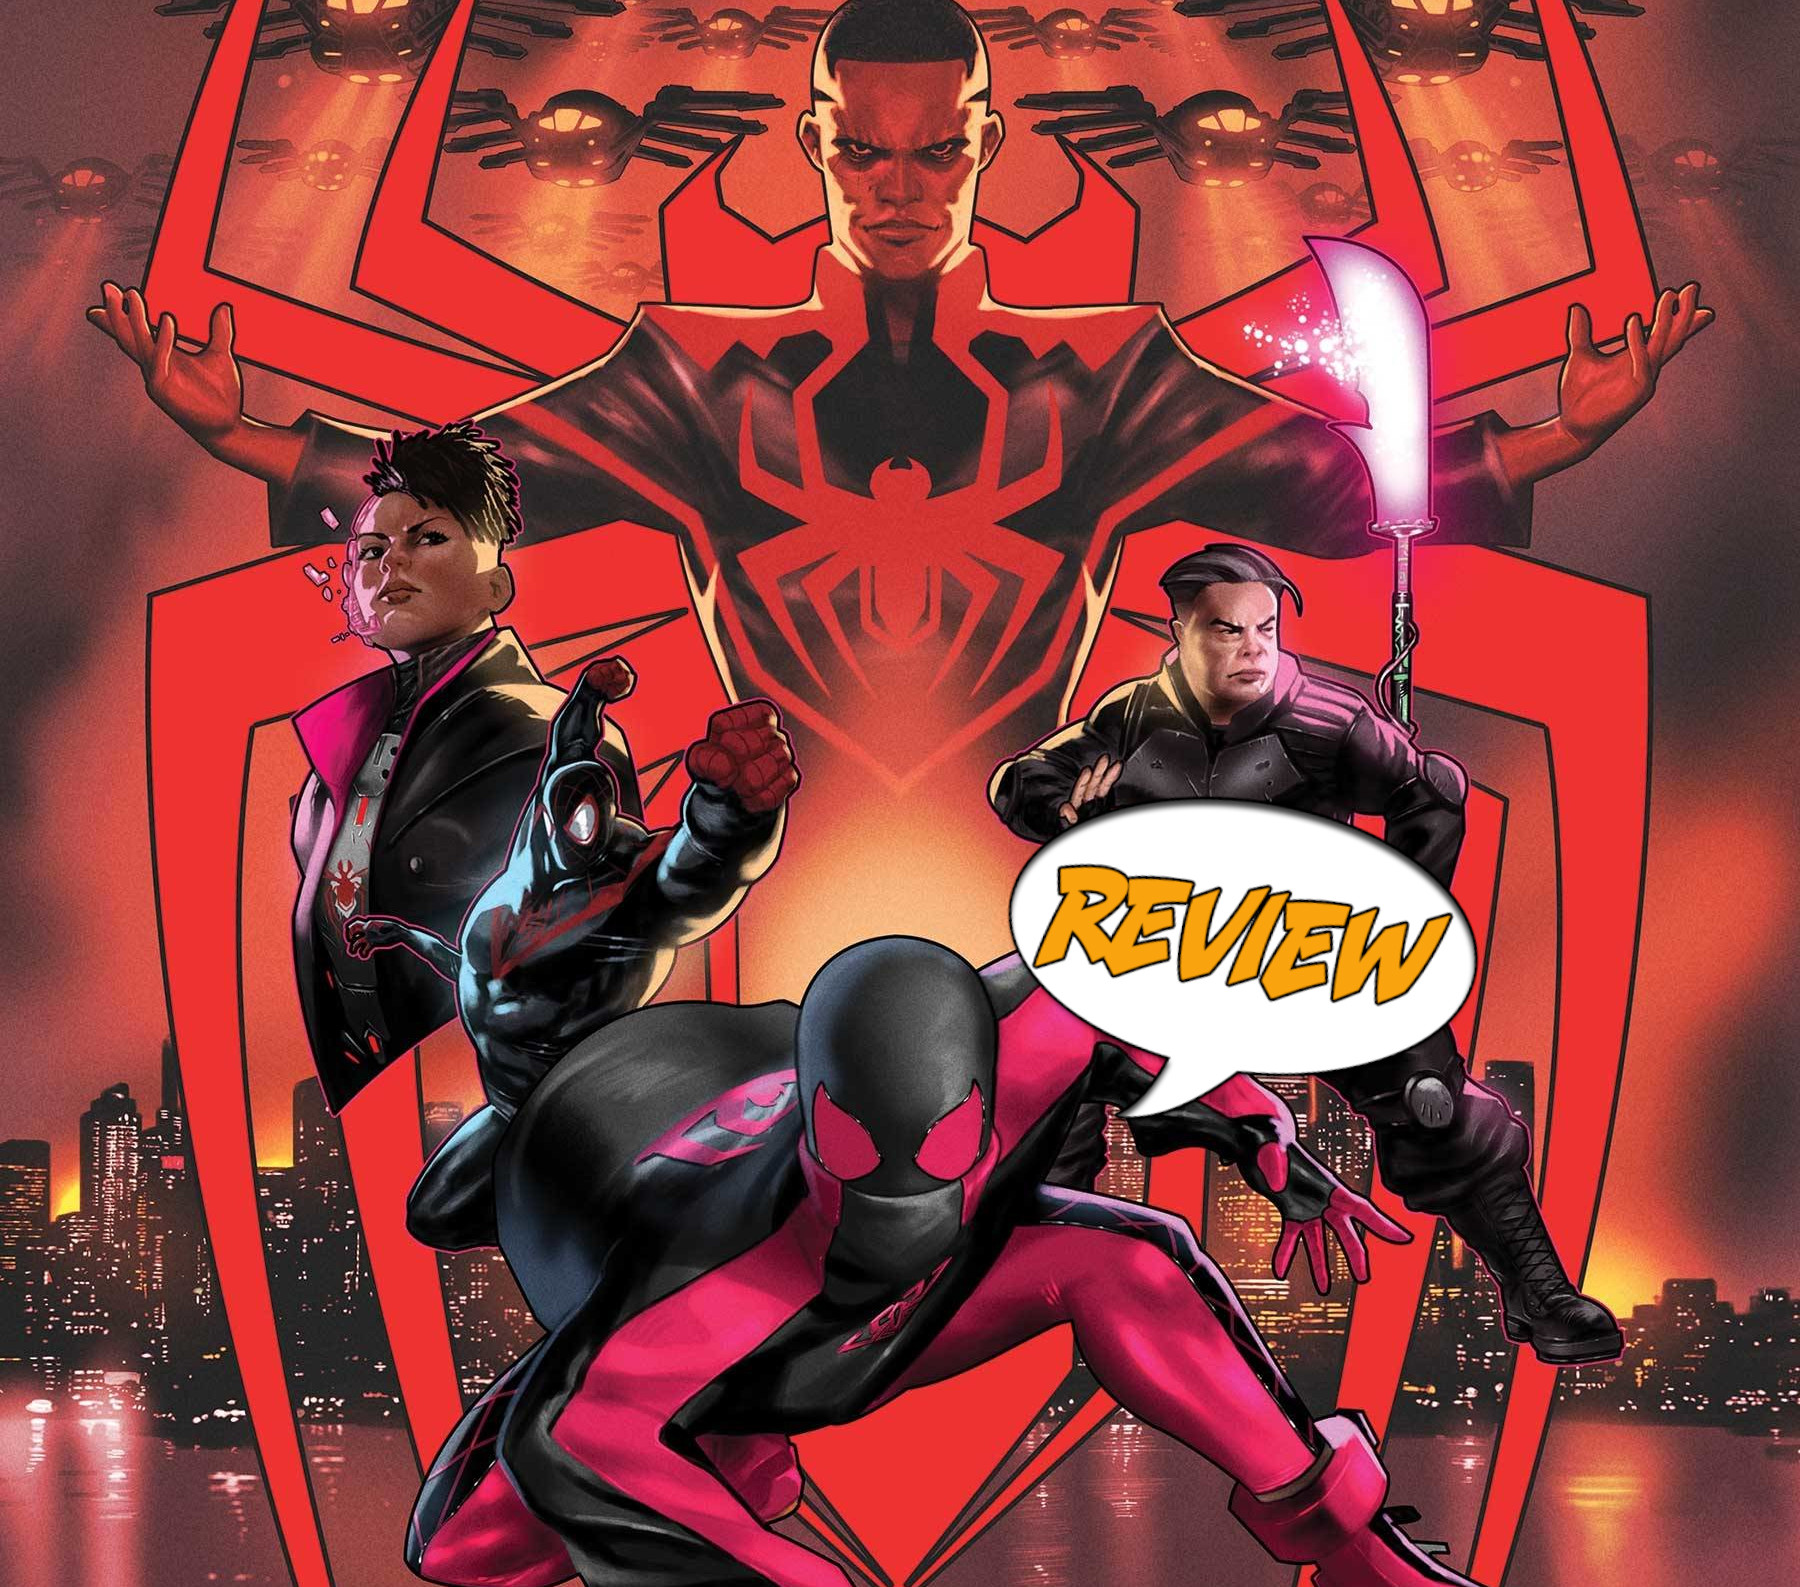 Miles Morales: Spider-Man #38 Review — Major Spoilers — Comic Book